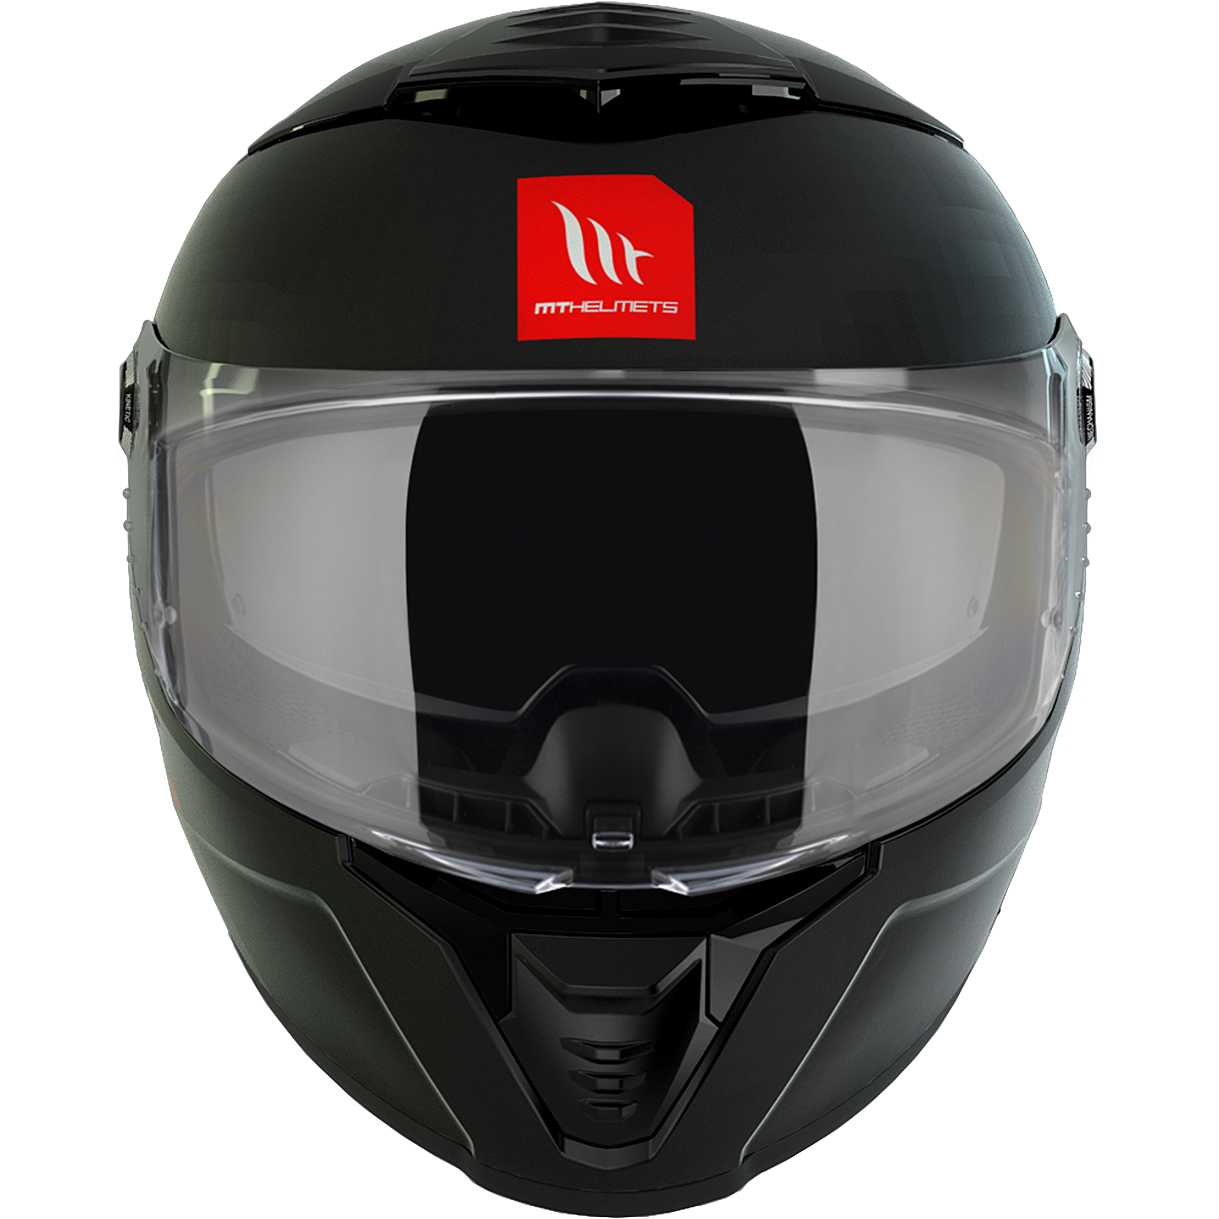 Casco Moto MT Helmets Thunder 4 SV